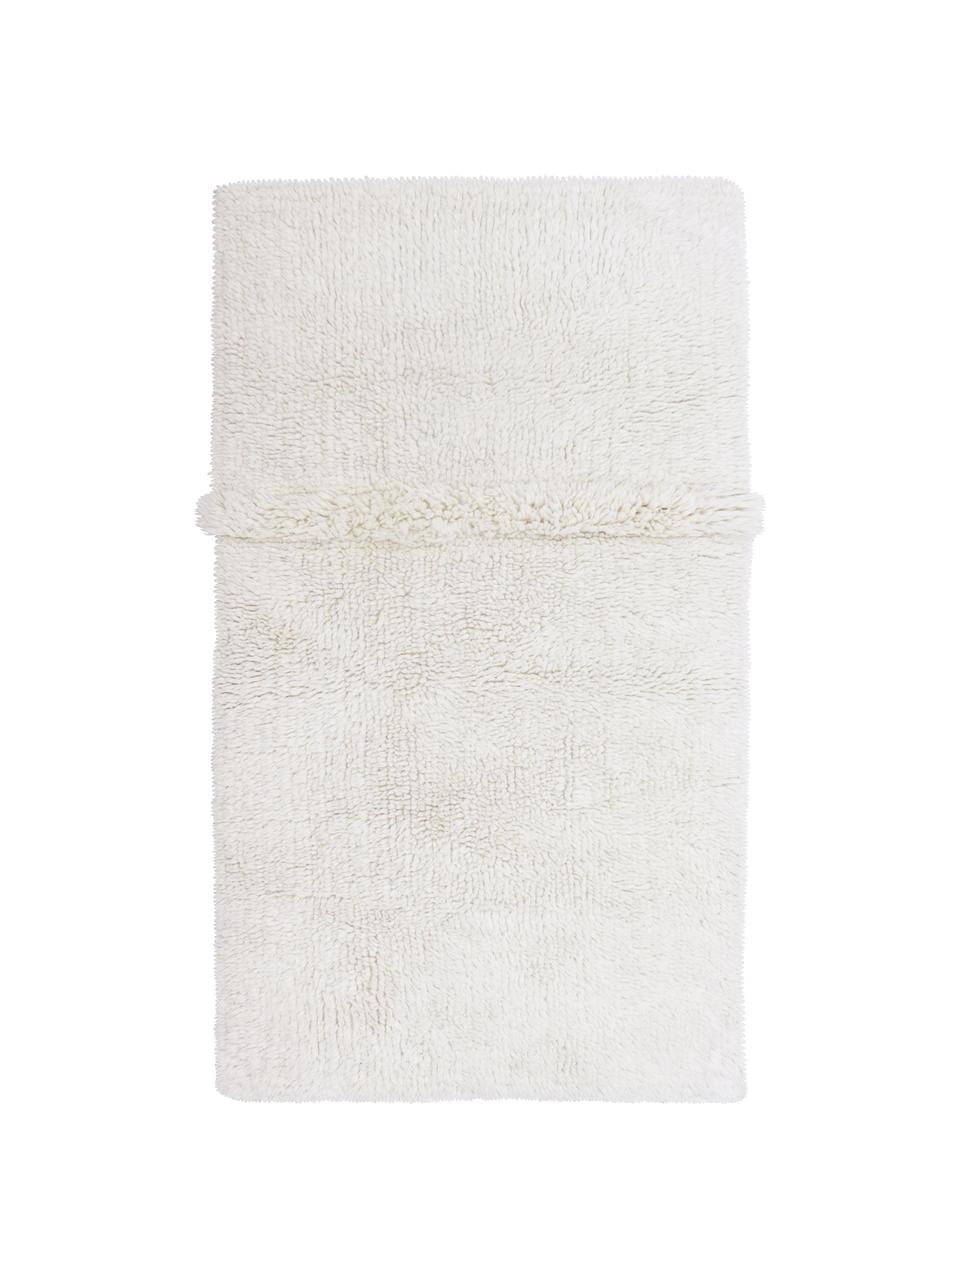 Tappeto in lana lavabile fatto a mano Tundra, Retro: cotone riciclato Nel caso, Bianco crema, Larg. 80 x Lung. 140 cm (taglia XS)